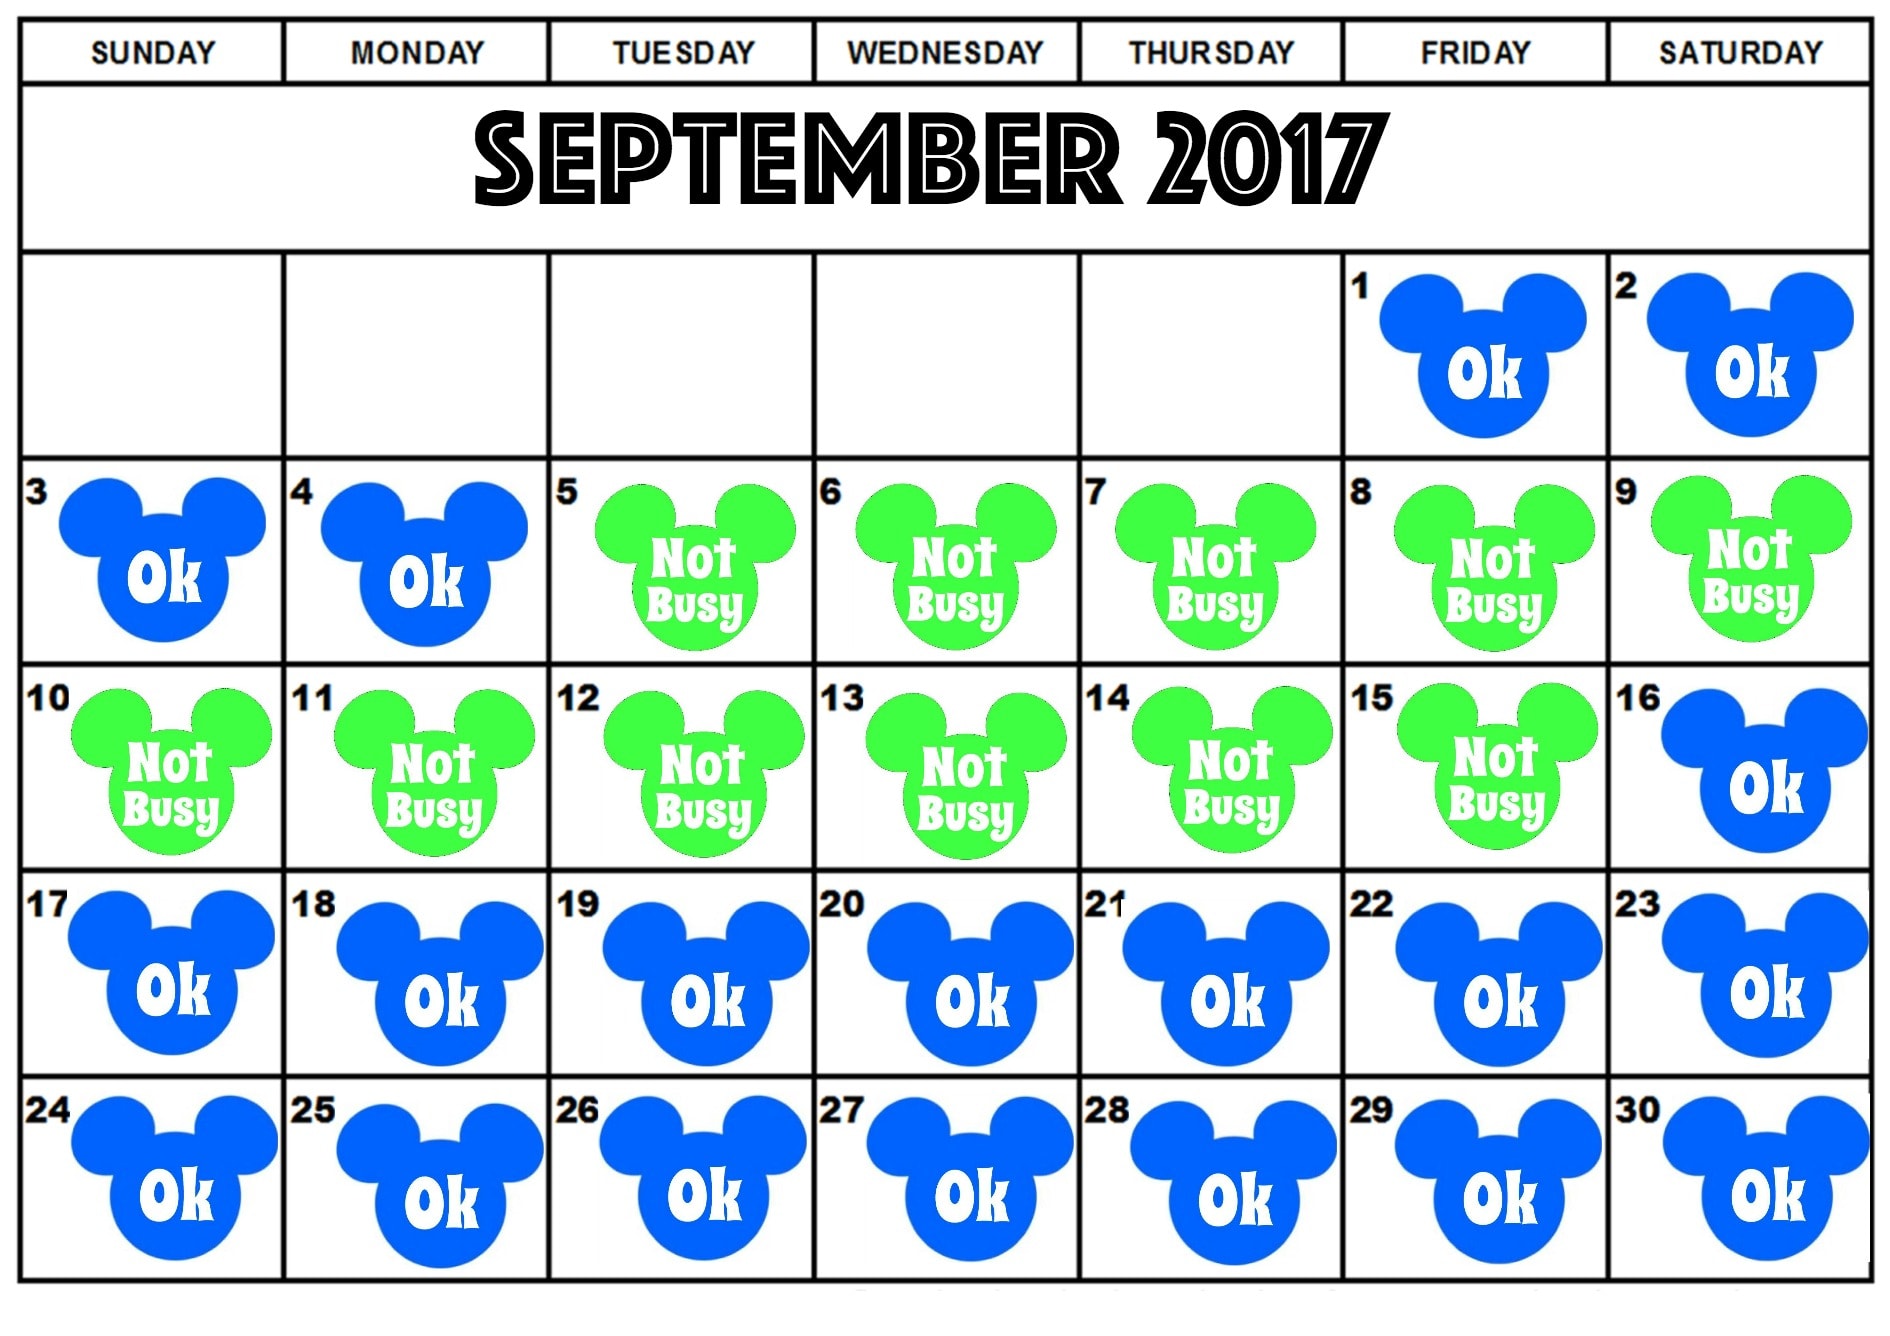 Best Days to Visit Disney World in 2017